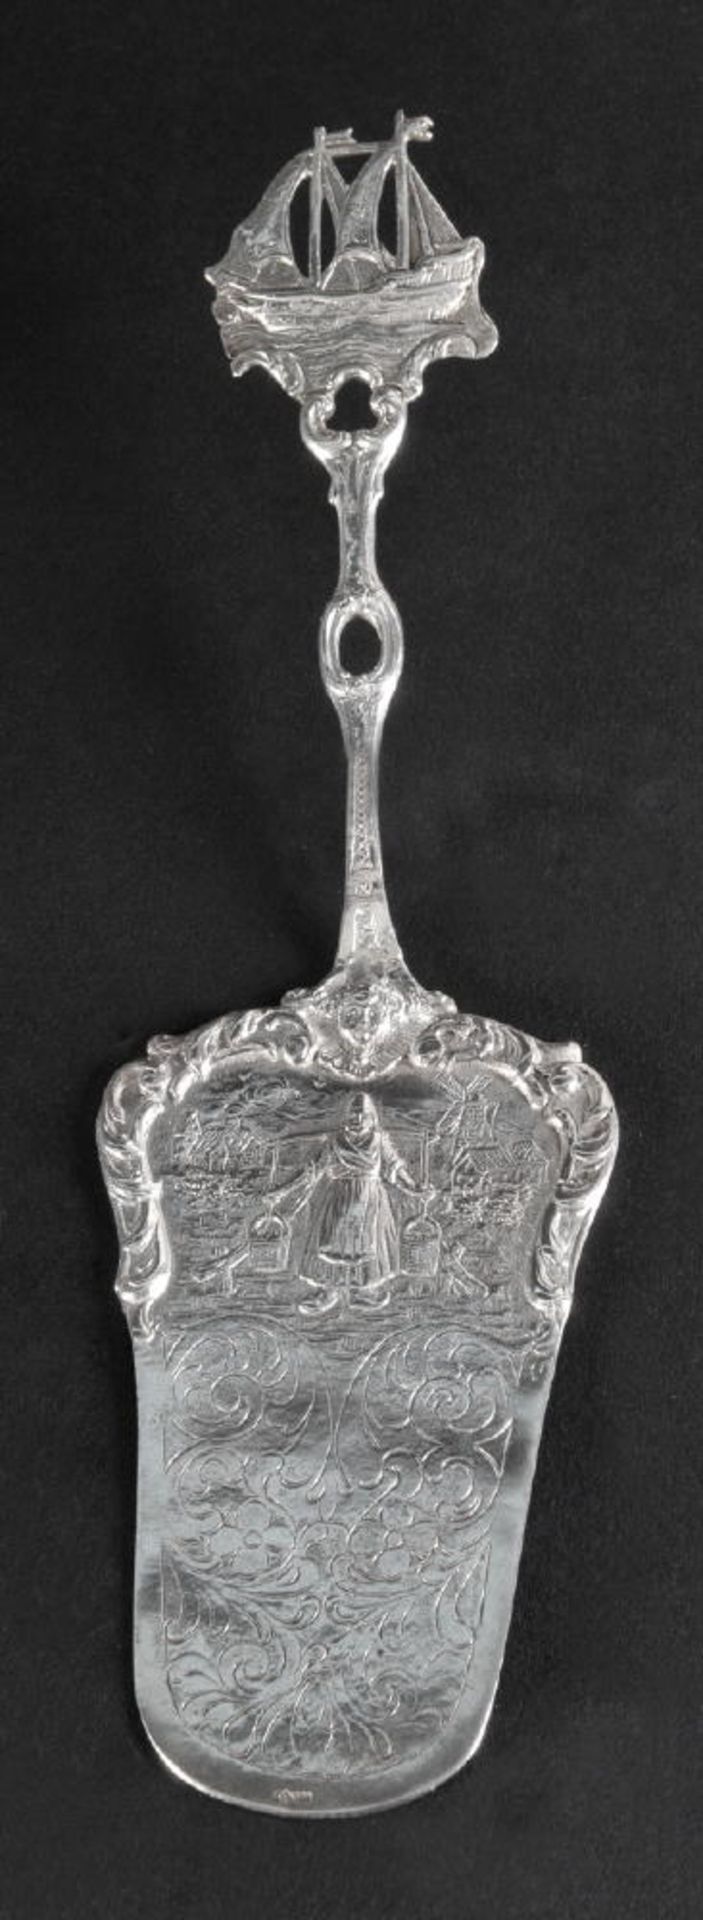 Kuchenheber800 Silber, 66 g, reich strukturiertes Ornamentdekor mit Bäuerin, Griff mit